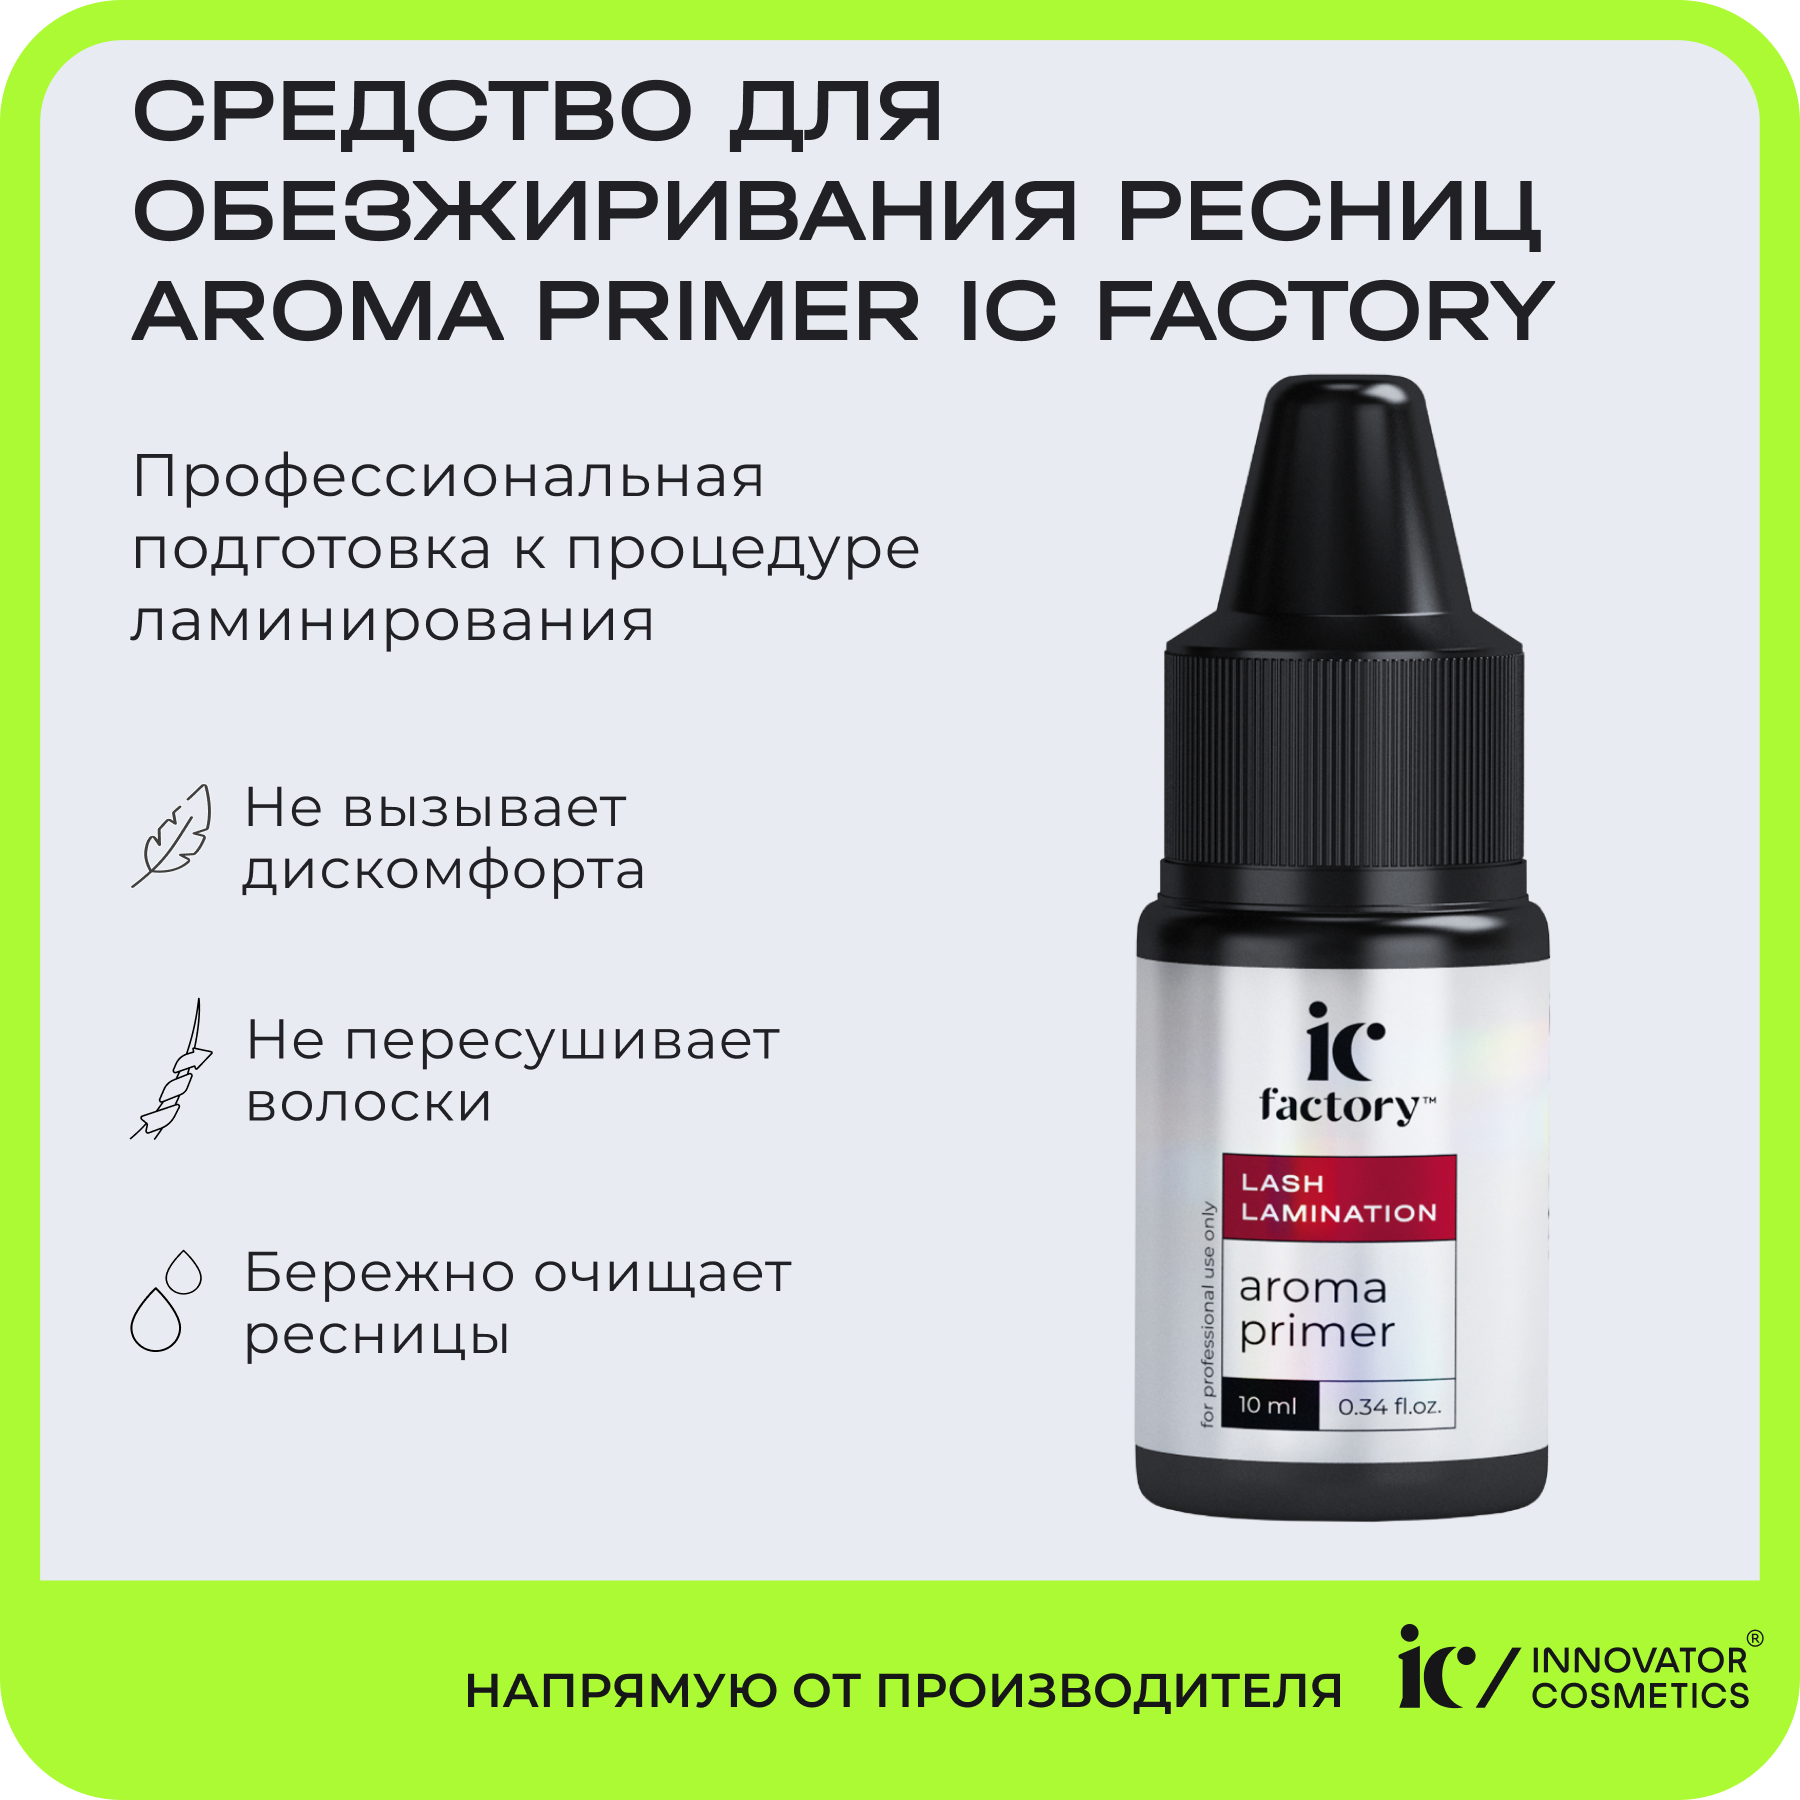 Средство для обезжиривания ресниц Innovator Cosmetics Aroma Primer Ic Factory 10 мл